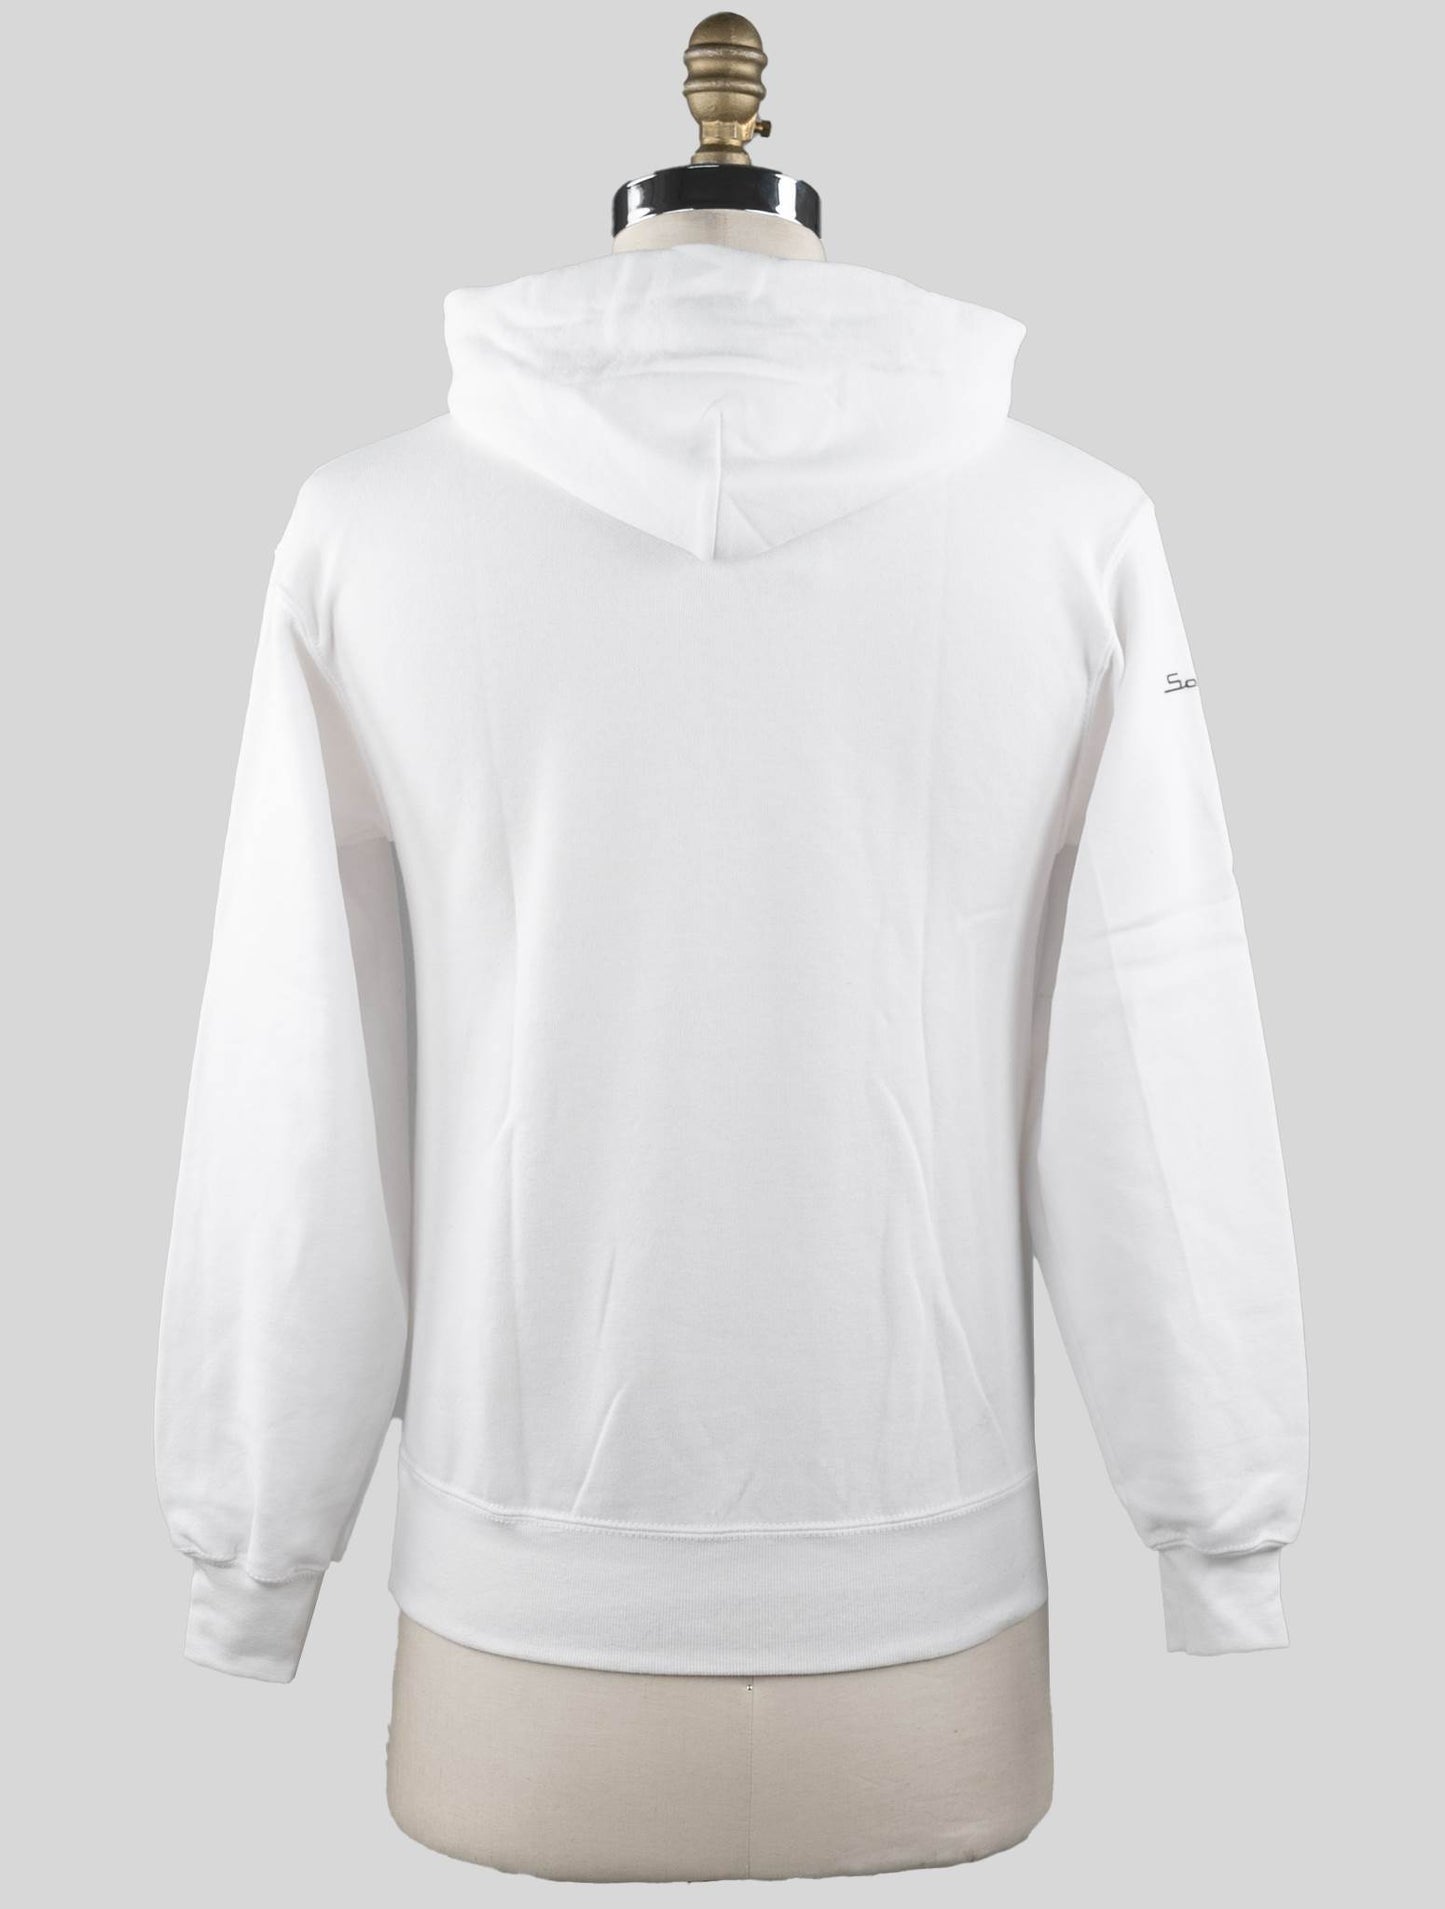 Sartorio Napoli White Cotton Sweater Special Edition